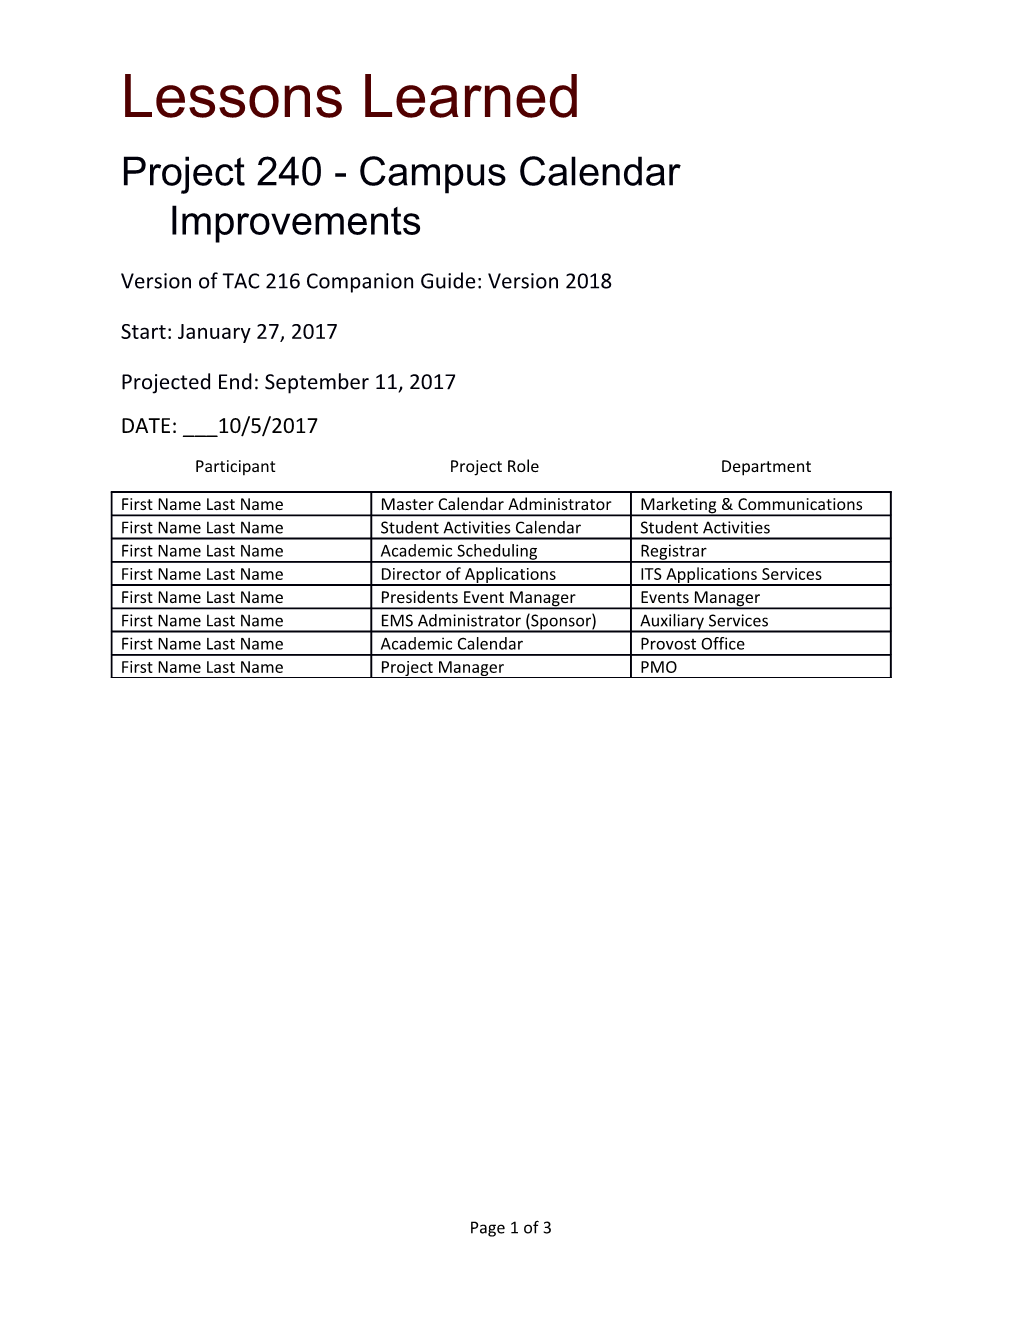 Project 240 - Campus Calendar Improvements